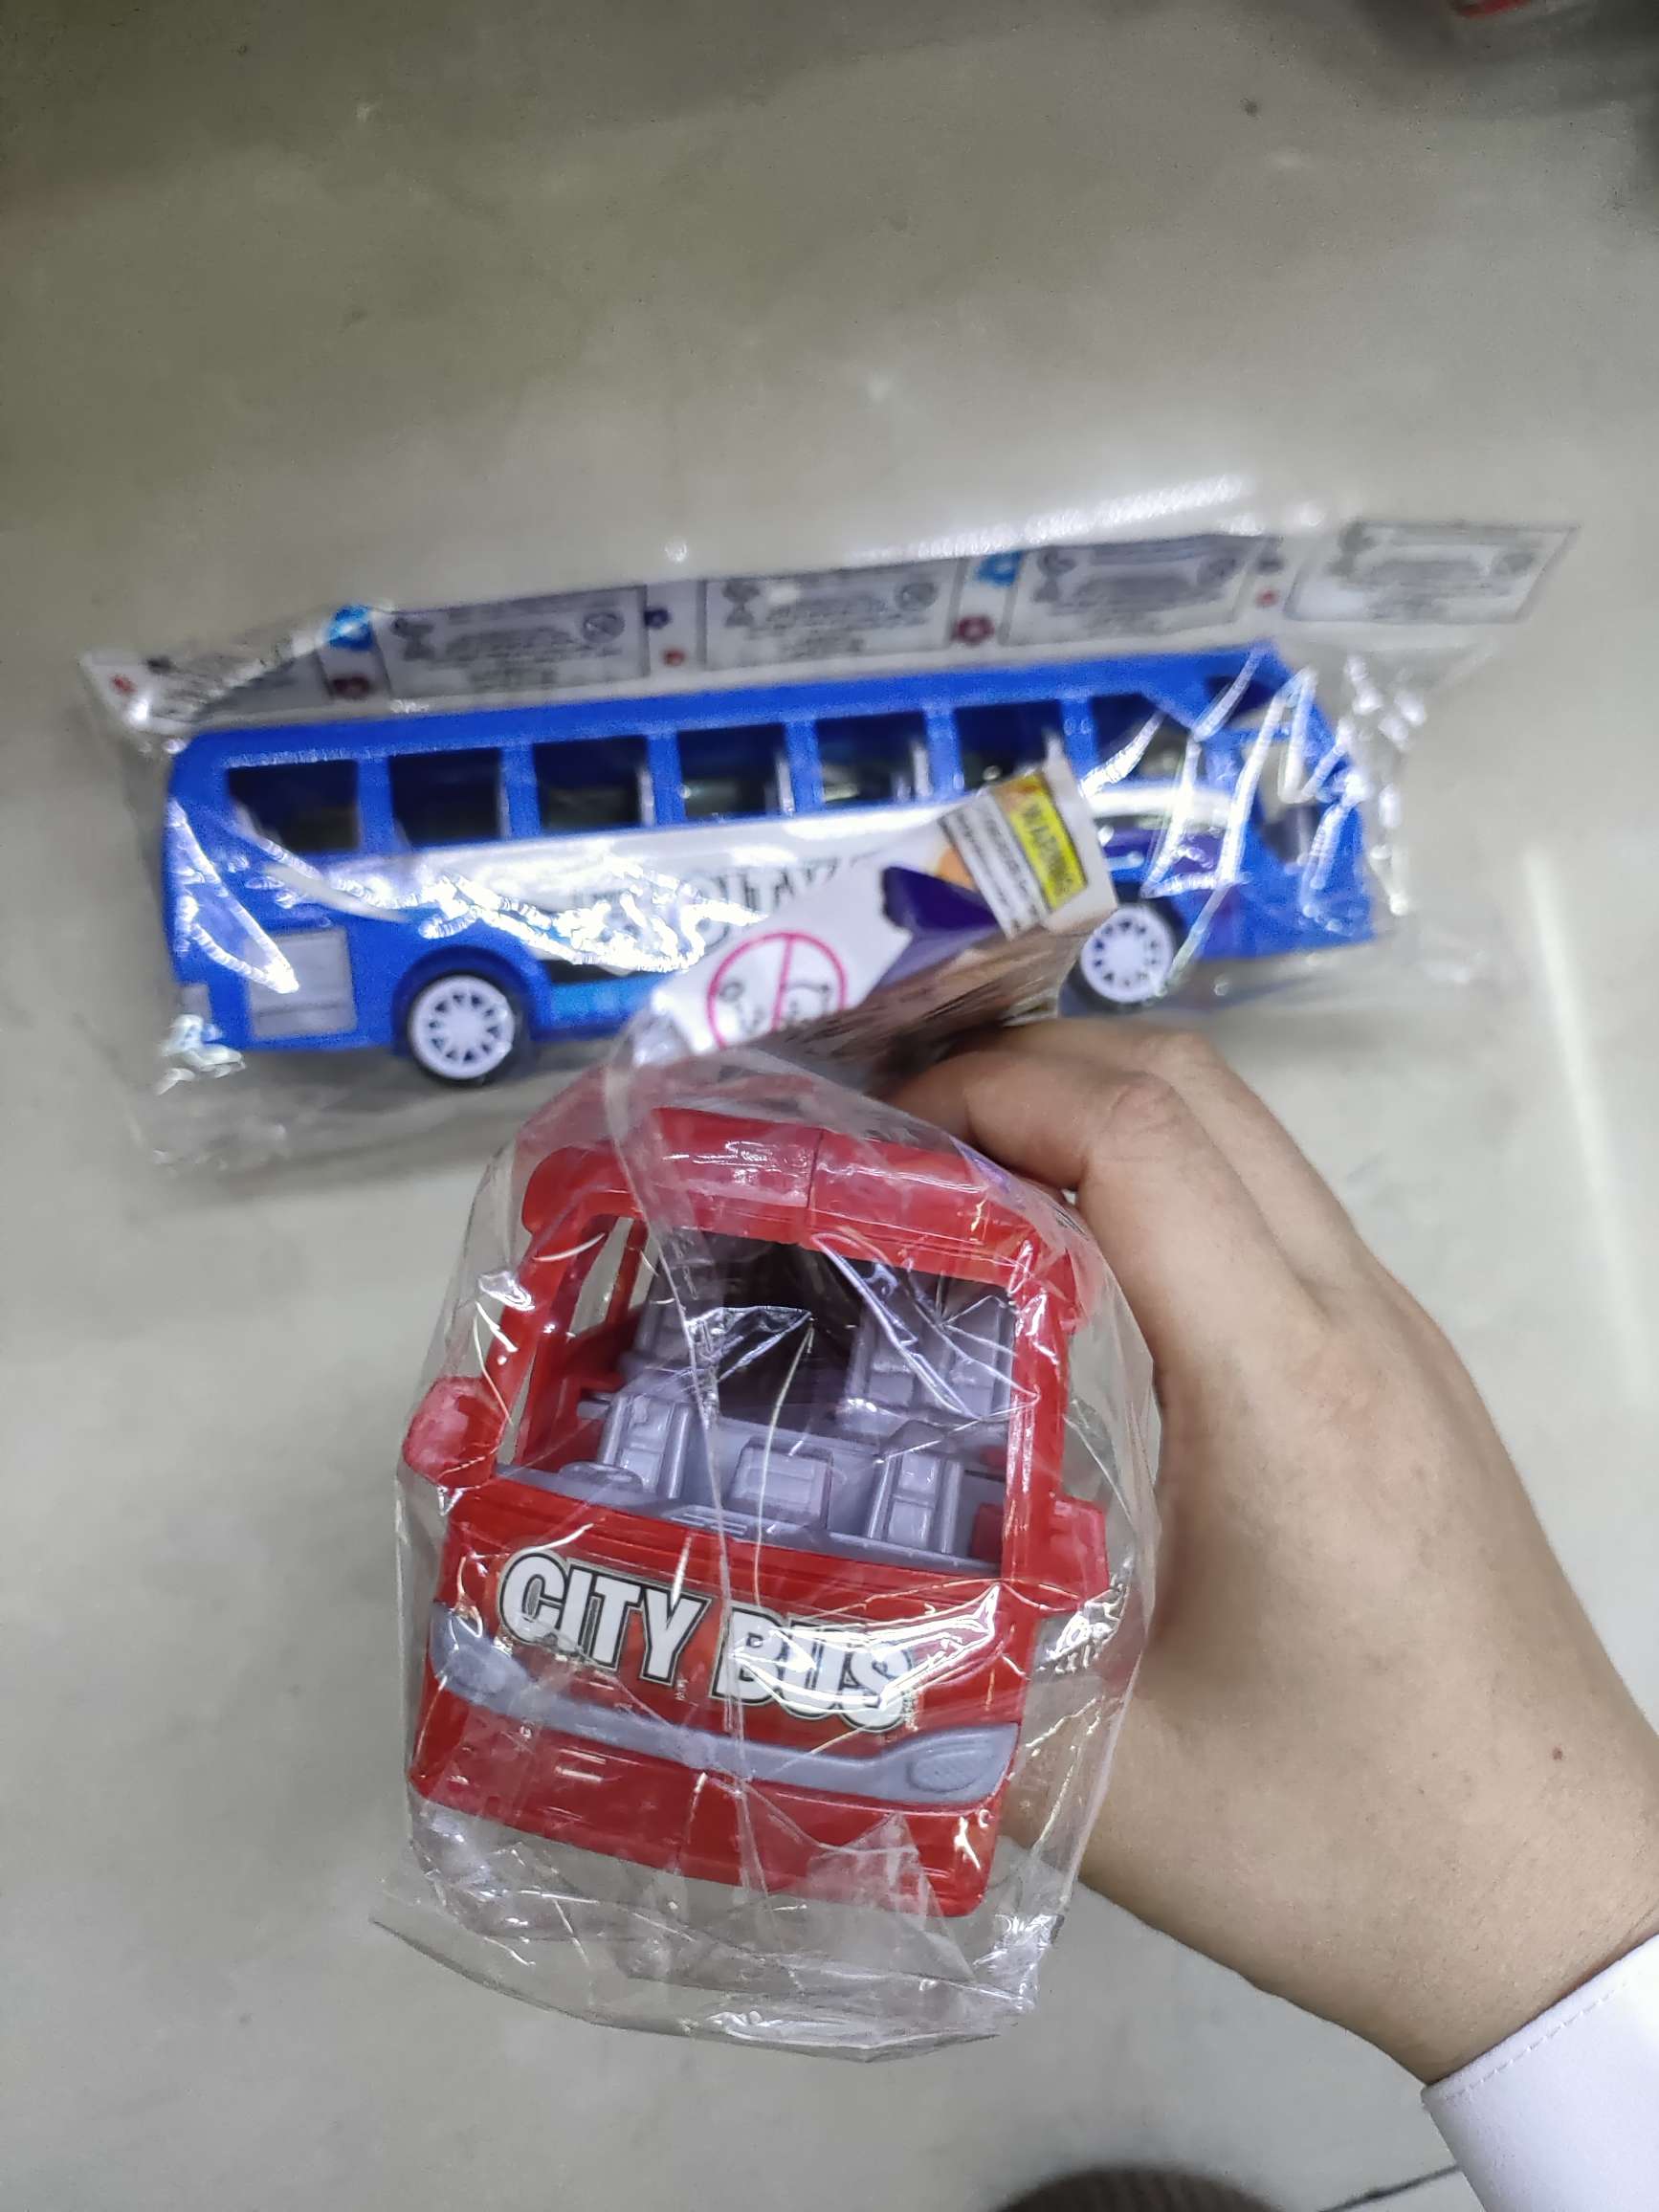 905359-3惯性巴士车，2色混（红蓝），opp袋装。3.9元/个，360个/箱。细节图